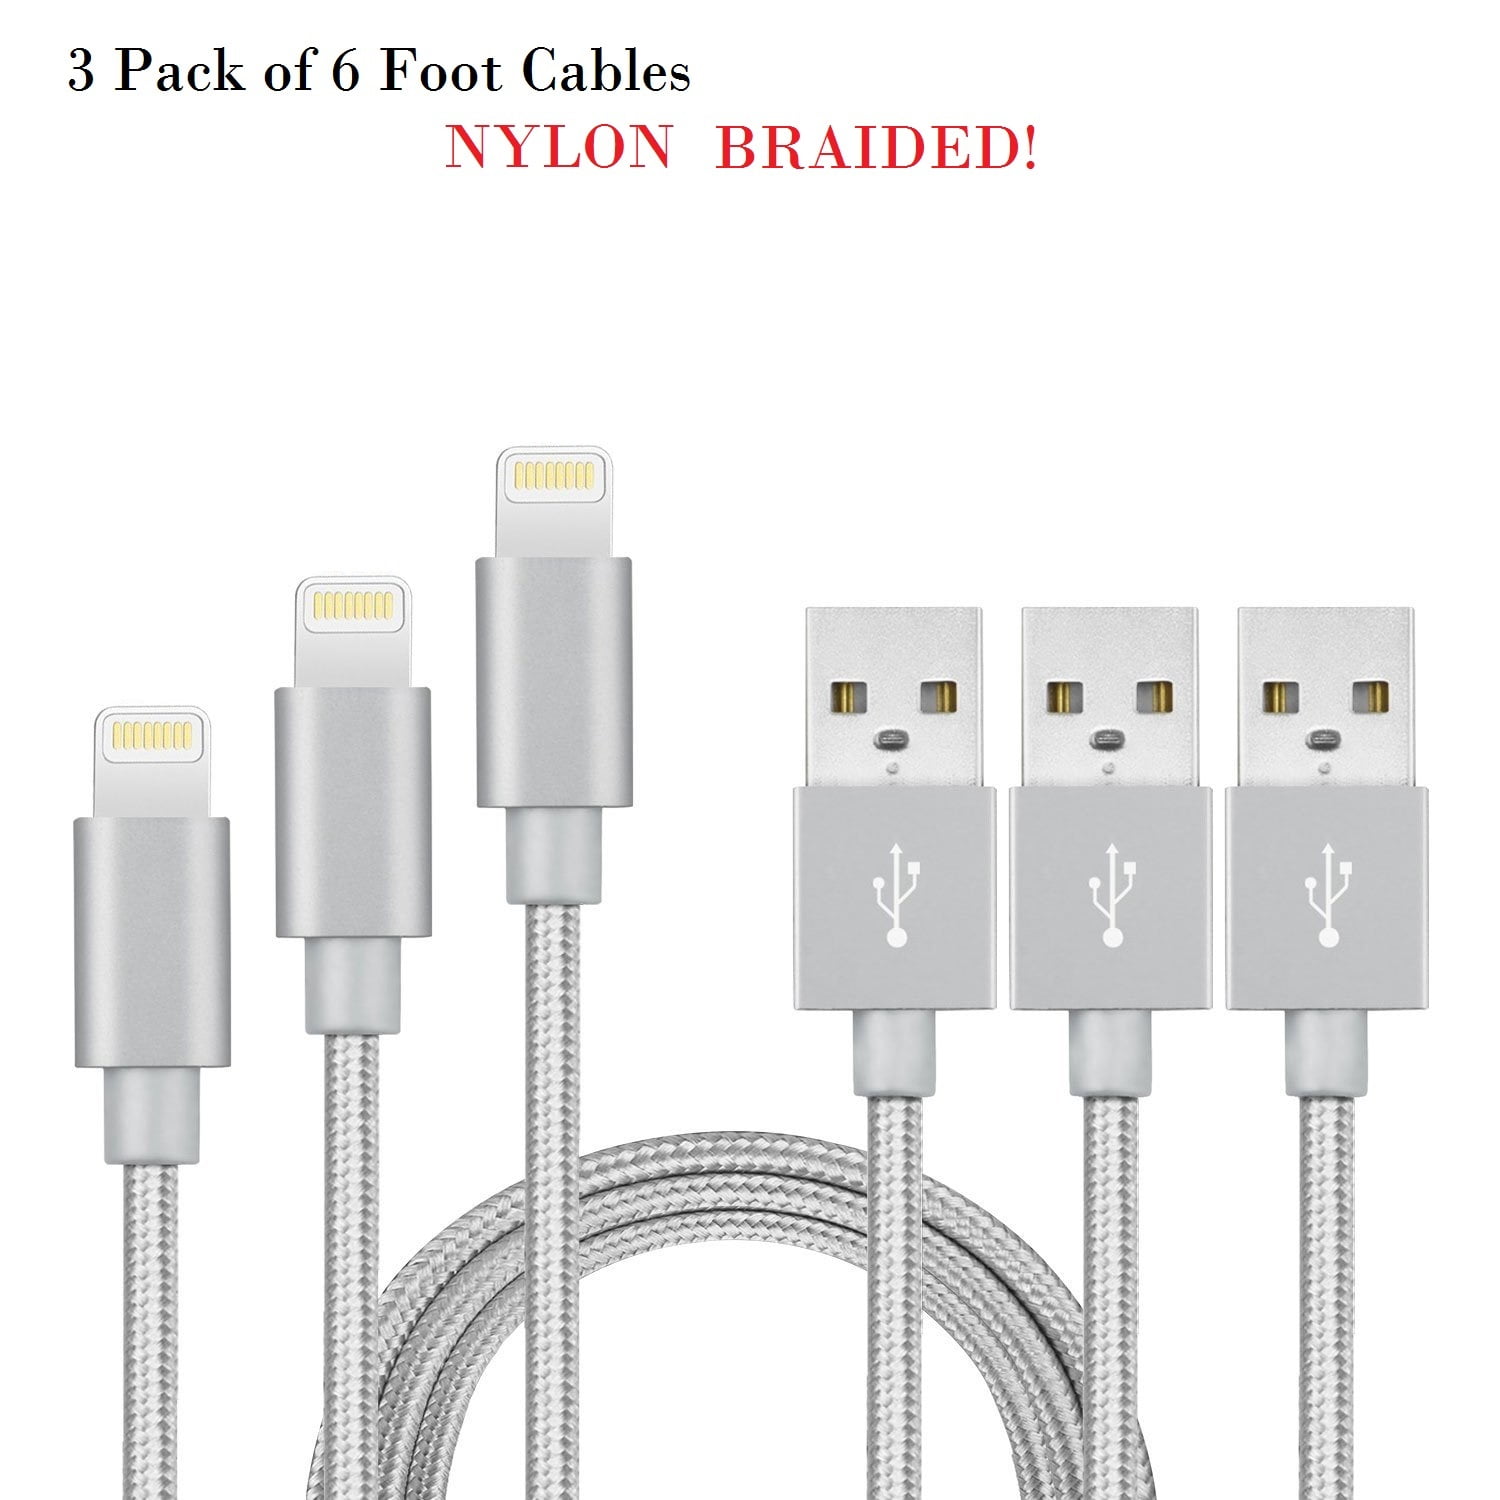 Veel gevaarlijke situaties verkenner Kosten 3 Pack) 6 foot lightning charging cable for Iphone and Ipad devices -  Walmart.com